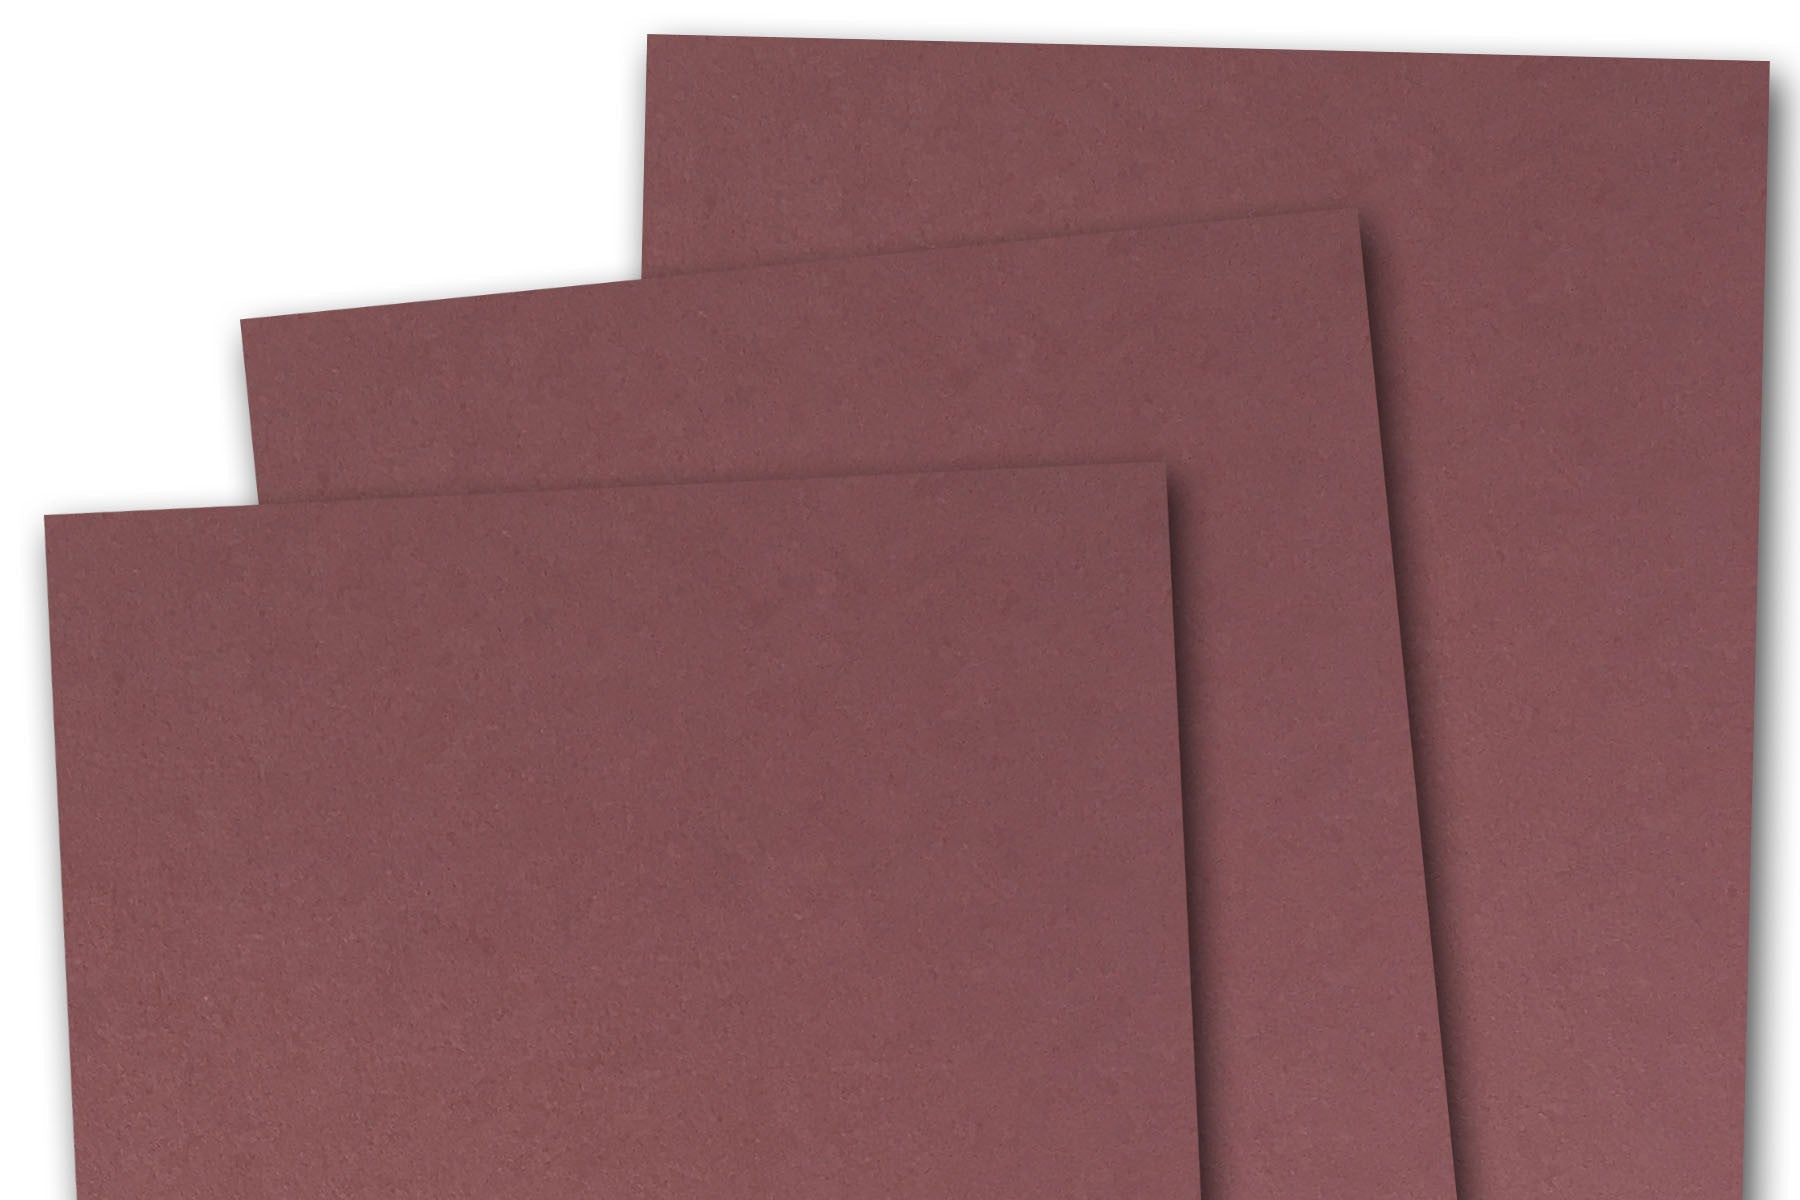 BASIS COLORS - 12 x 12 CARDSTOCK PAPER - Dark Red - 80LB COVER - 50 PK